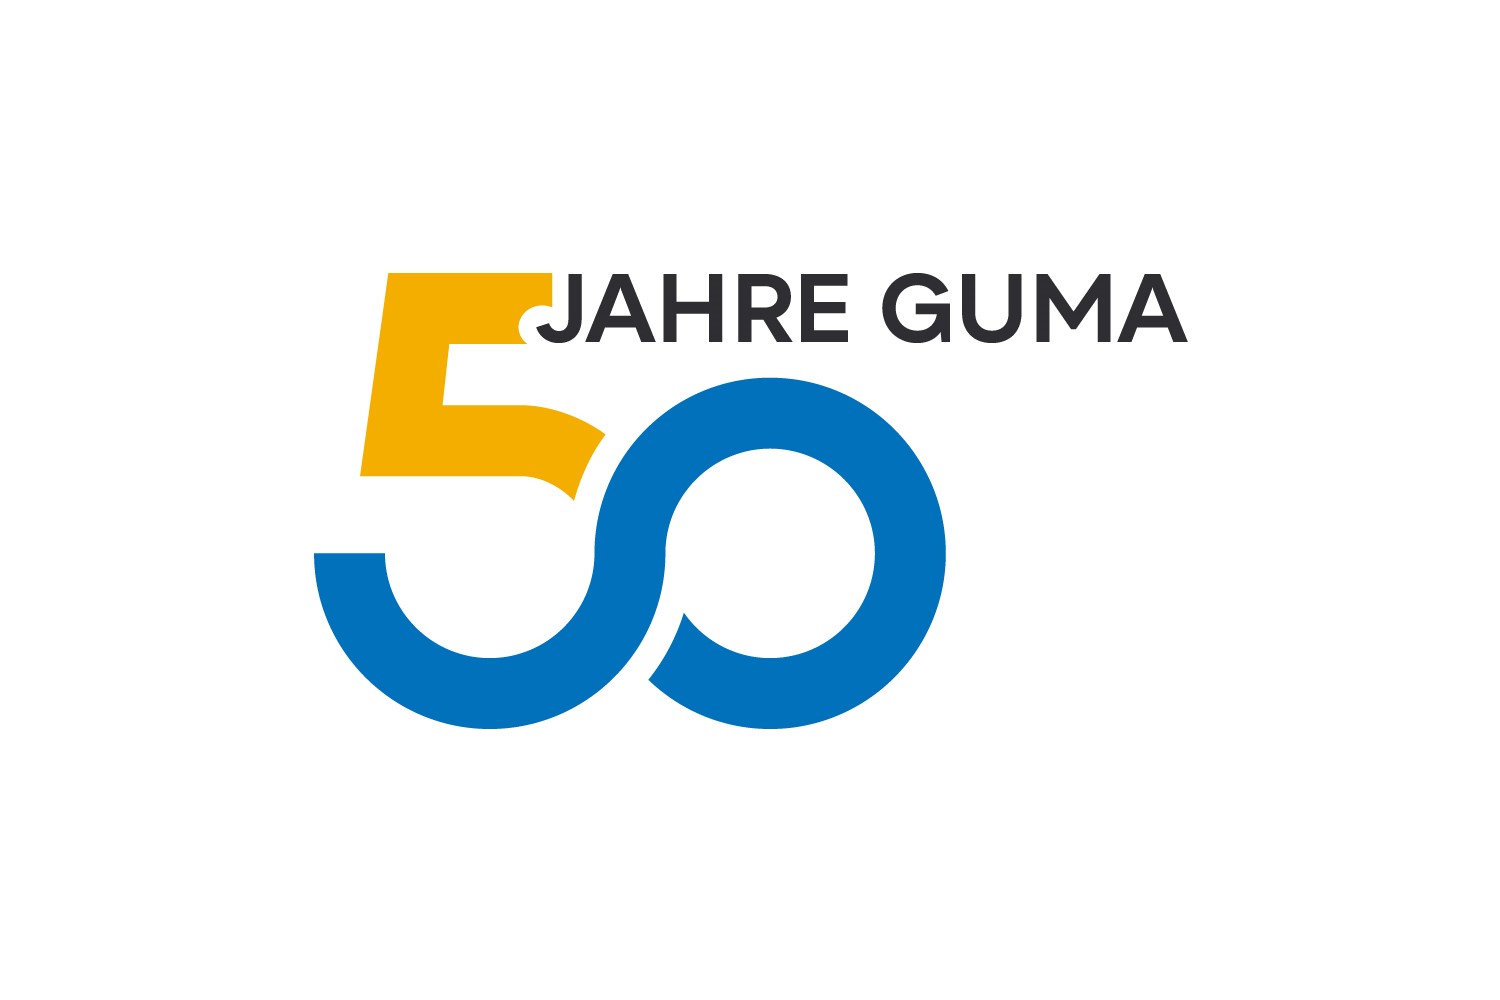 Guma Food Lebensmittel Convenience Bilten Schweiz News